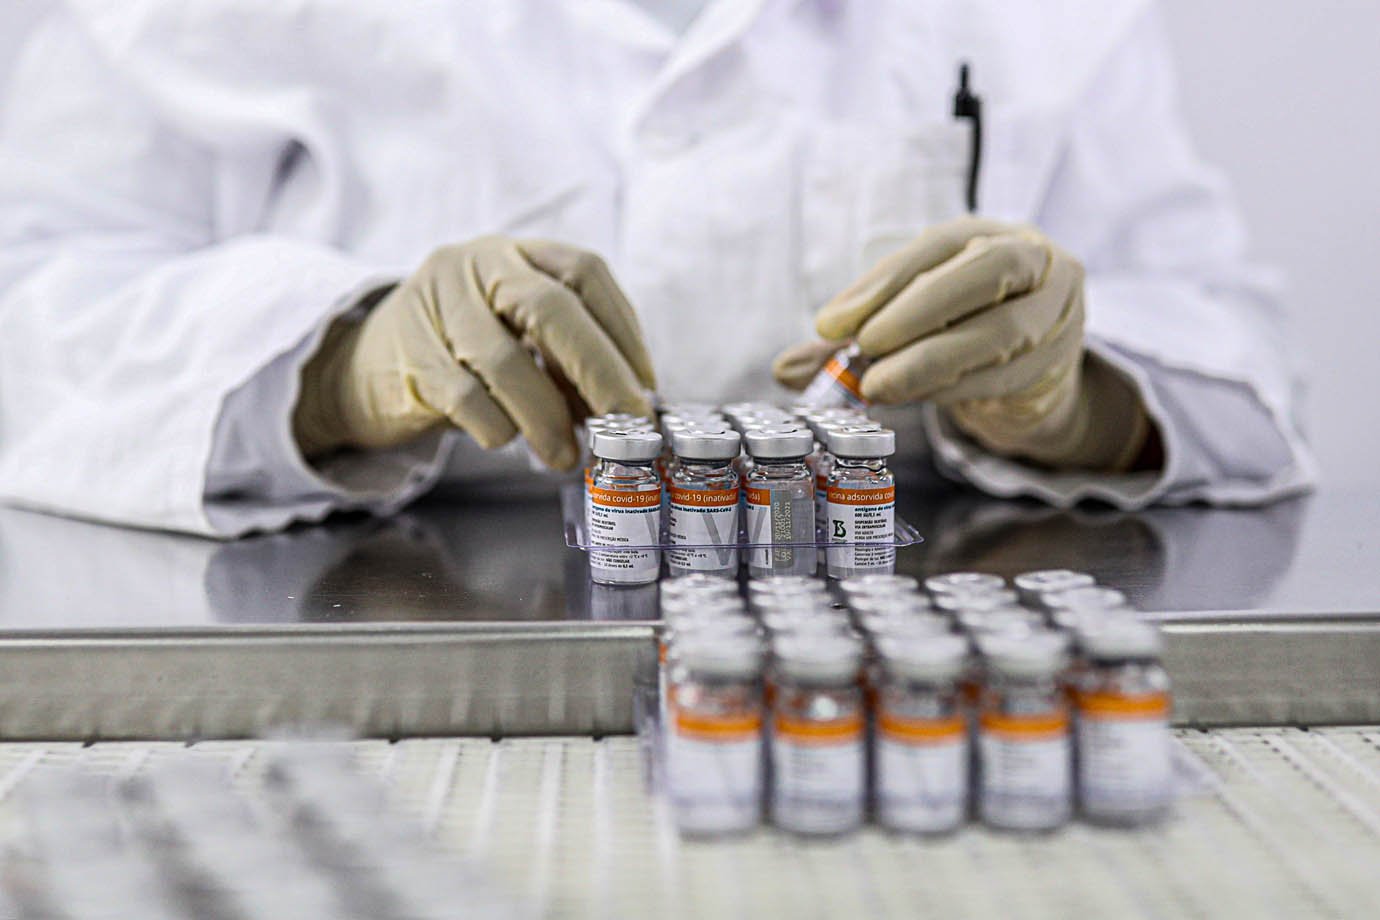 Funcionária coleta frascos contendo CoronaVac, vacina da Sinovac contra coronavírus (COVID-19), no centro de produção biomédica do Butantan em São Paulo, Brasil, 22 de janeiro de 2021. REUTERS / Amanda Perobelli